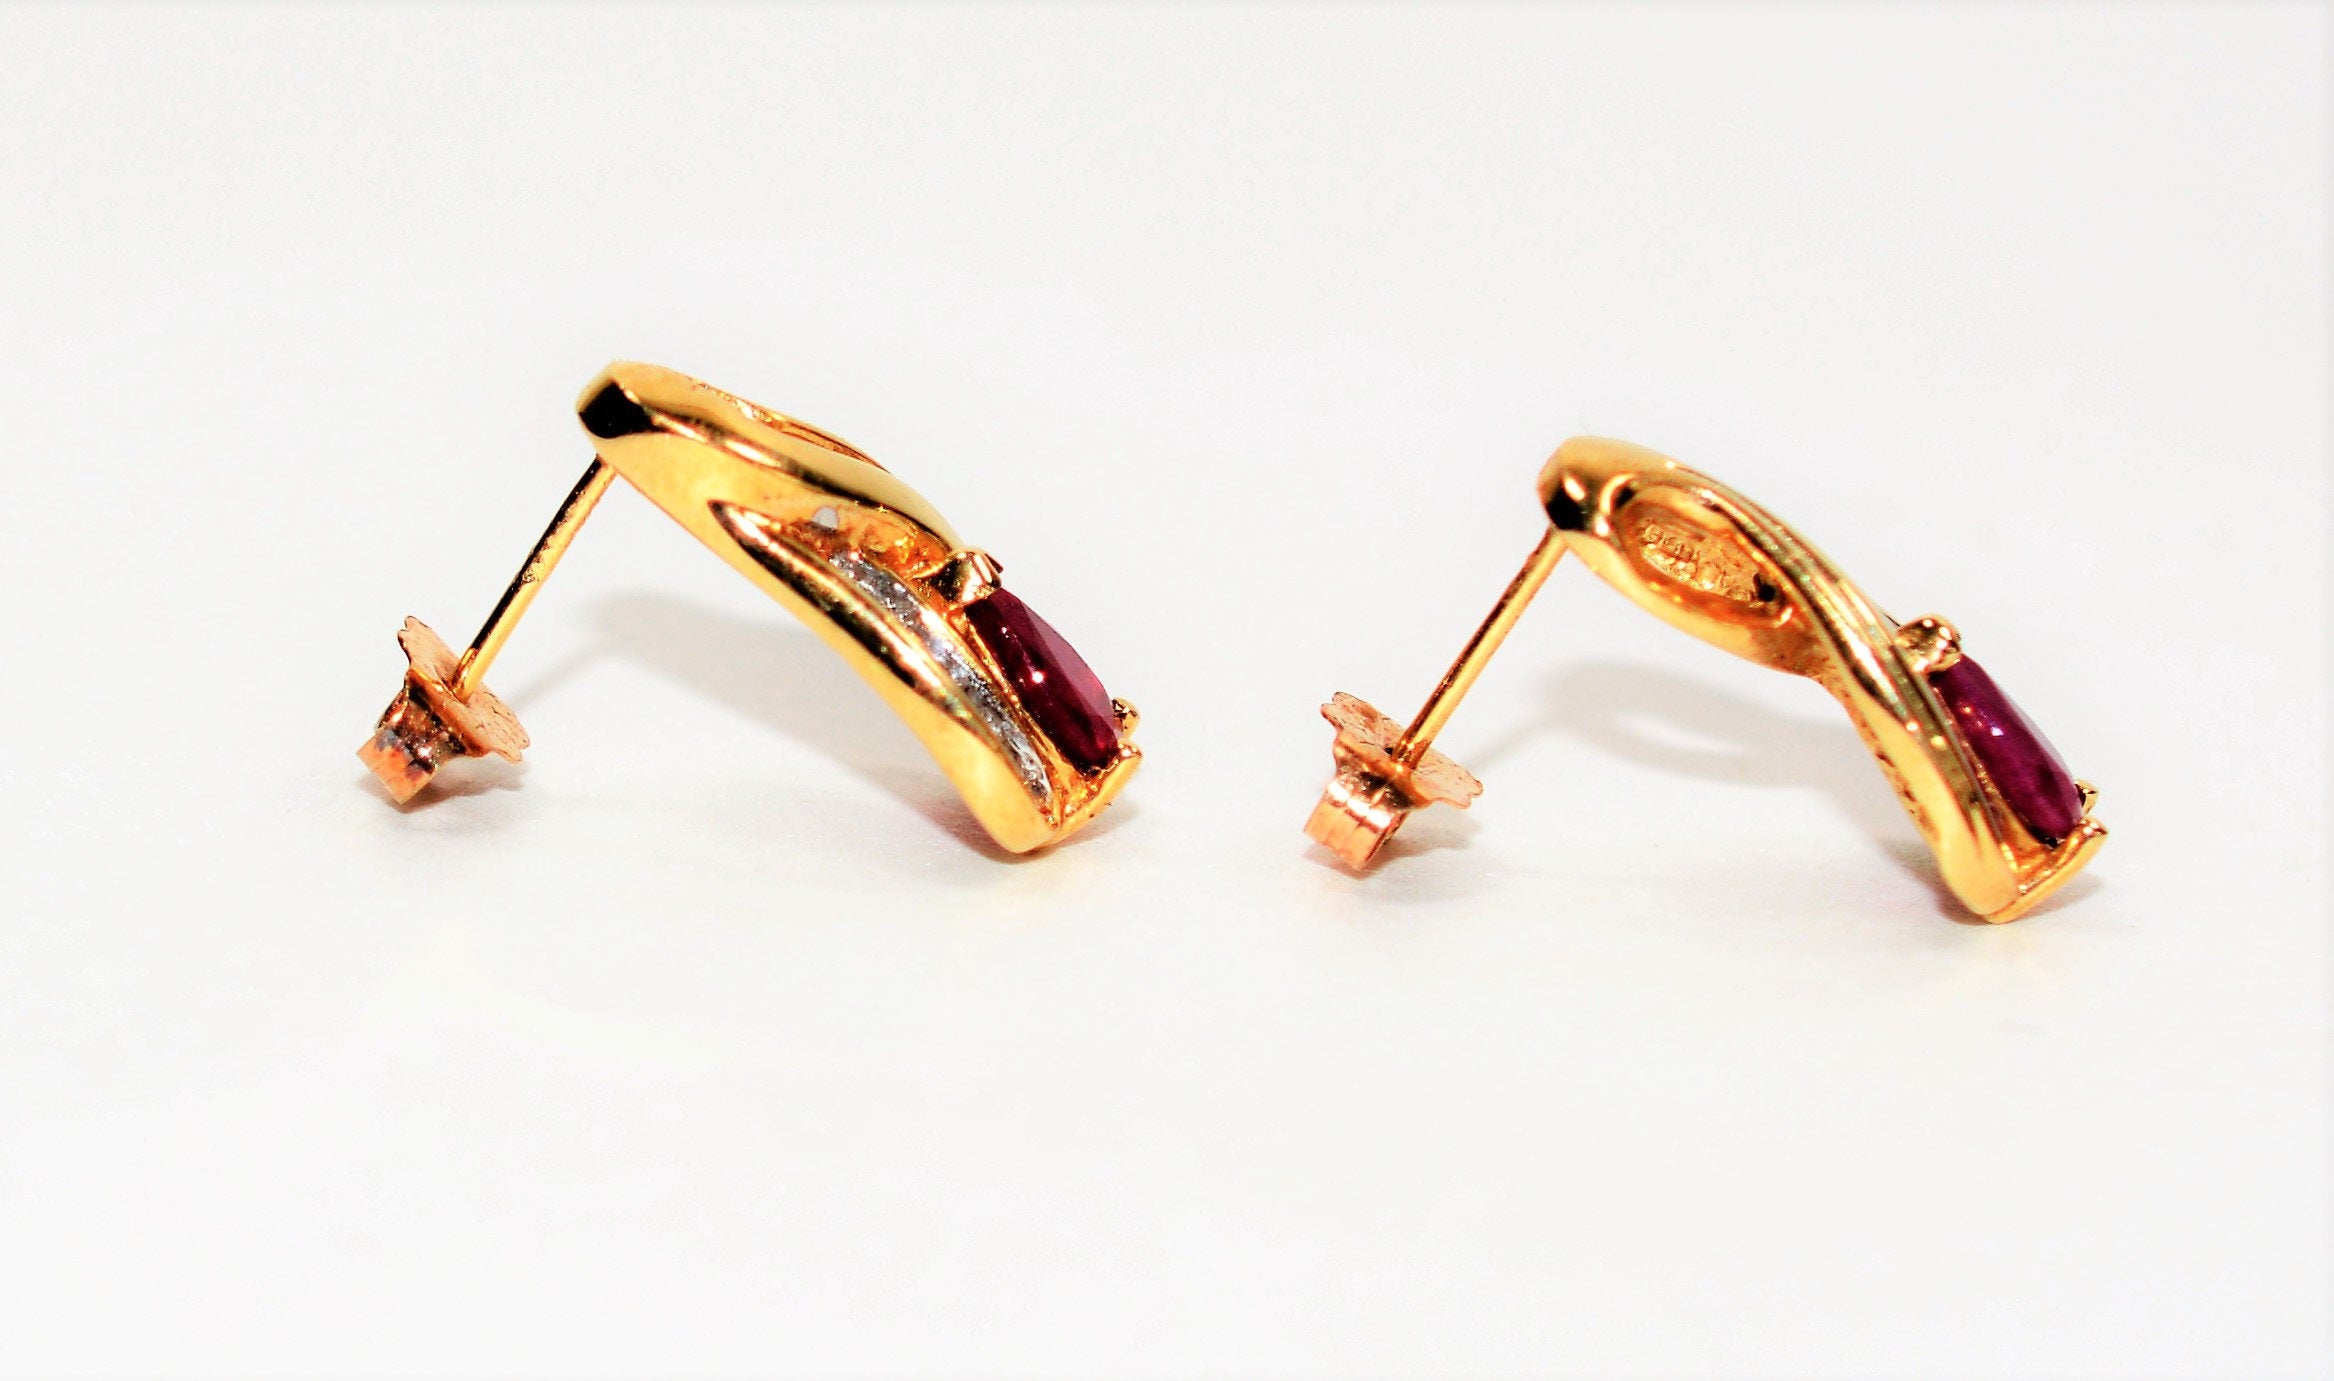 Natural Burmese Ruby & Diamond Earrings 10K Solid Gold .86tcw Ruby Earrings Red Earrings Stud Earrings Statement Earrings Women's Earrings